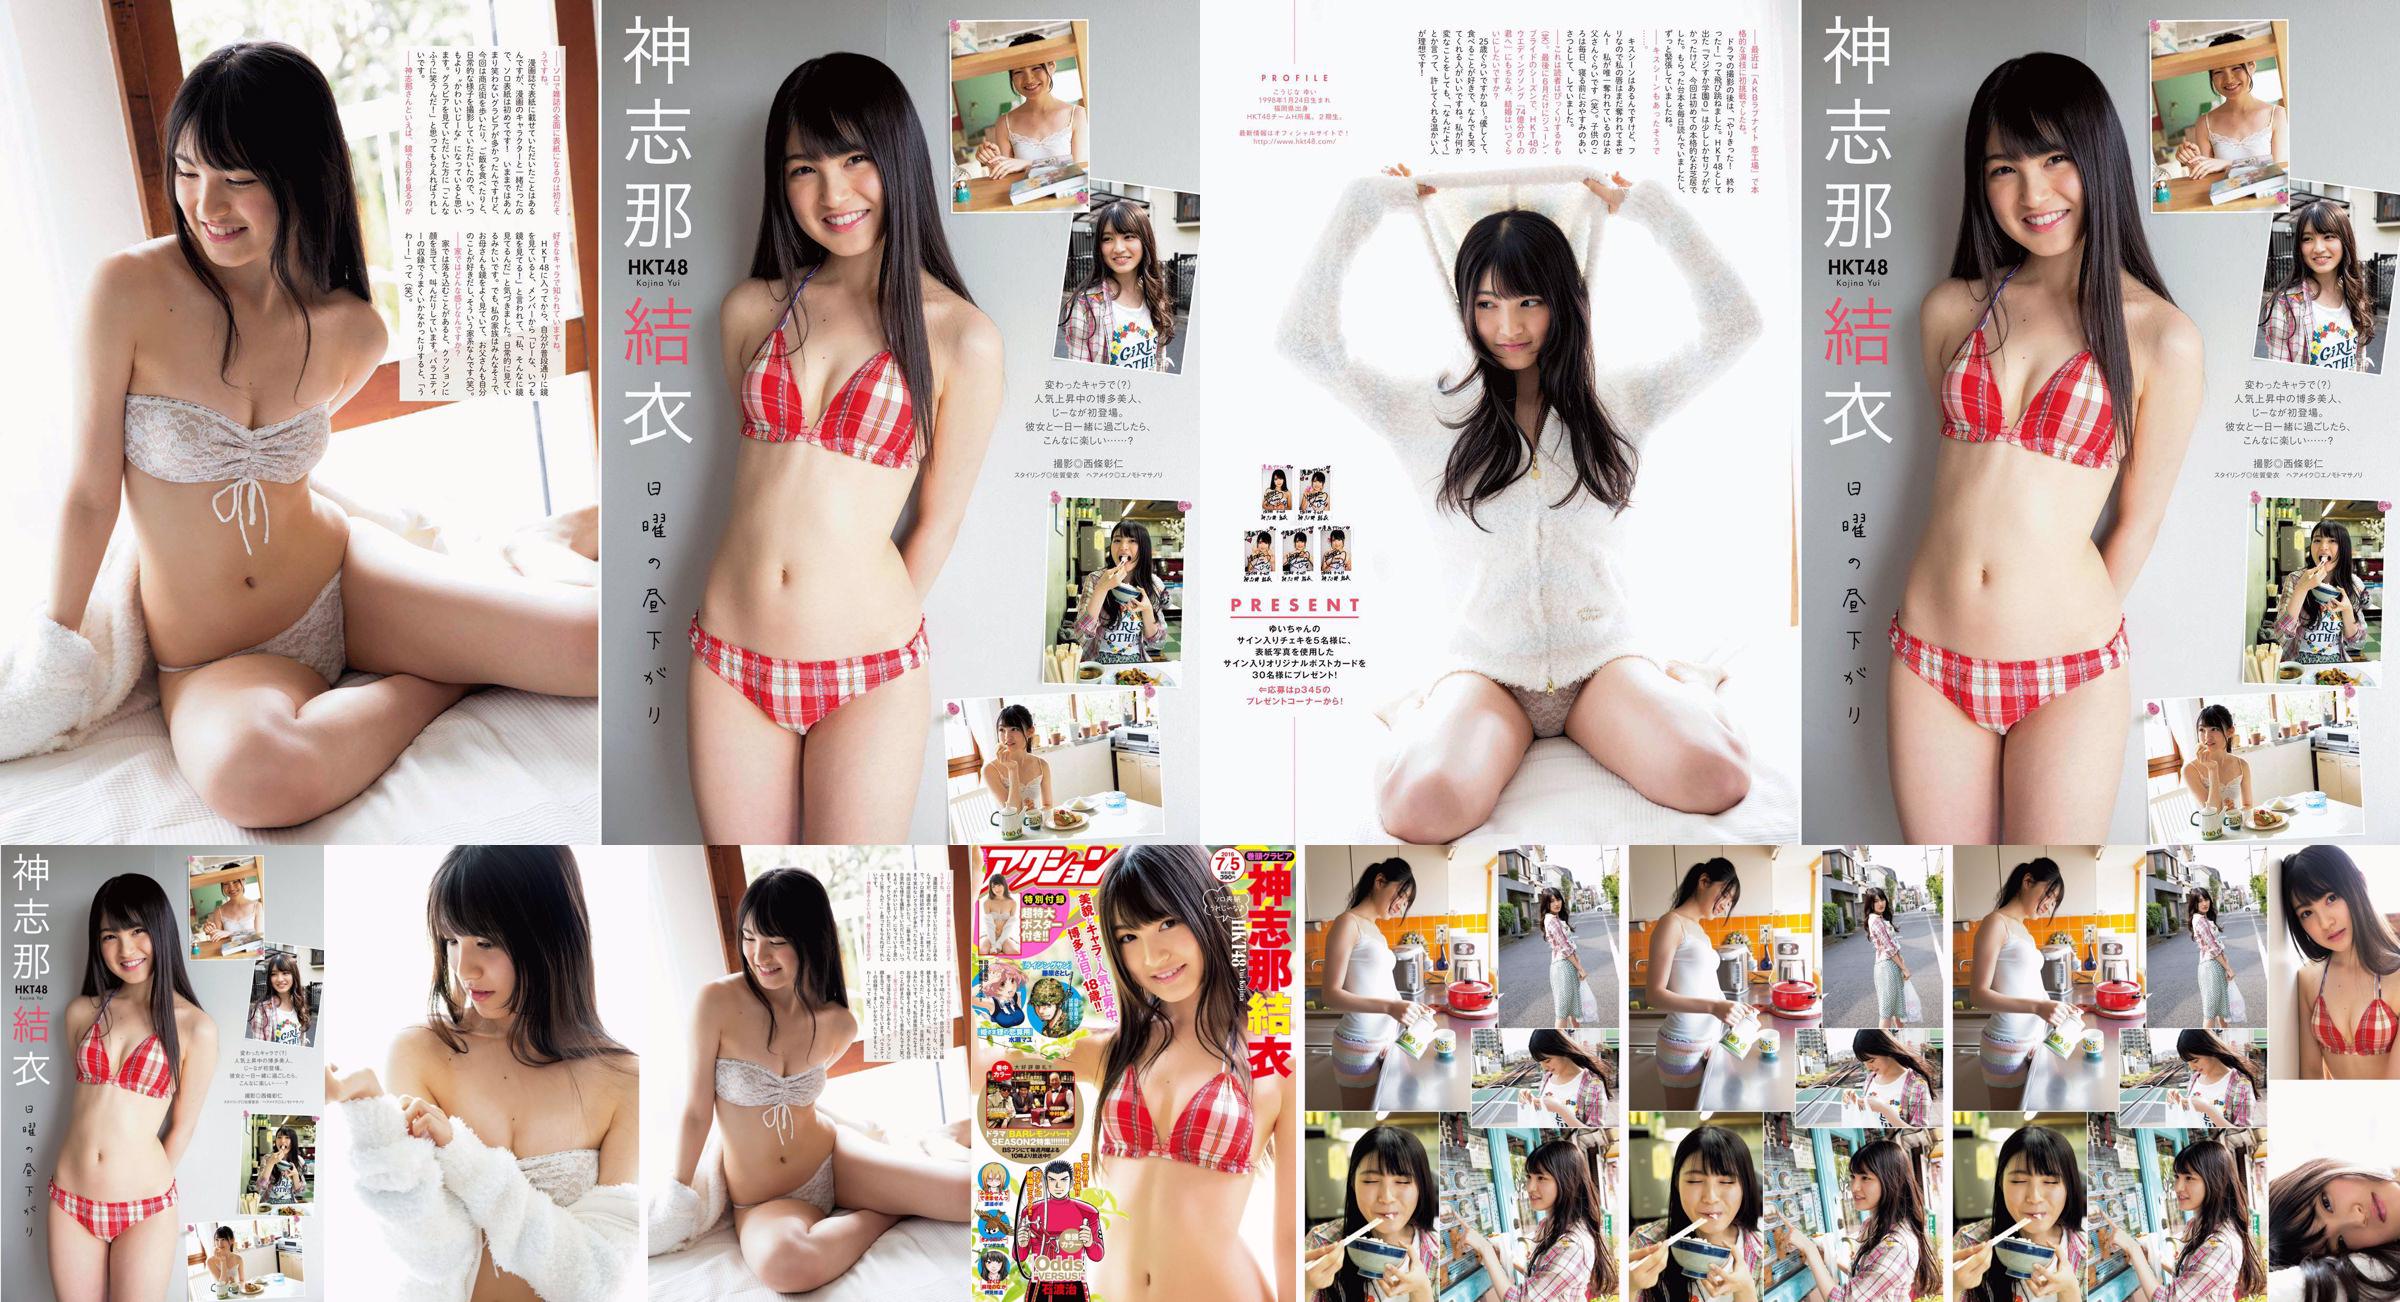 [Manga Action] Shinshina Yui 2016 No.13 Photo Magazine No.a6ecd3 Página 1